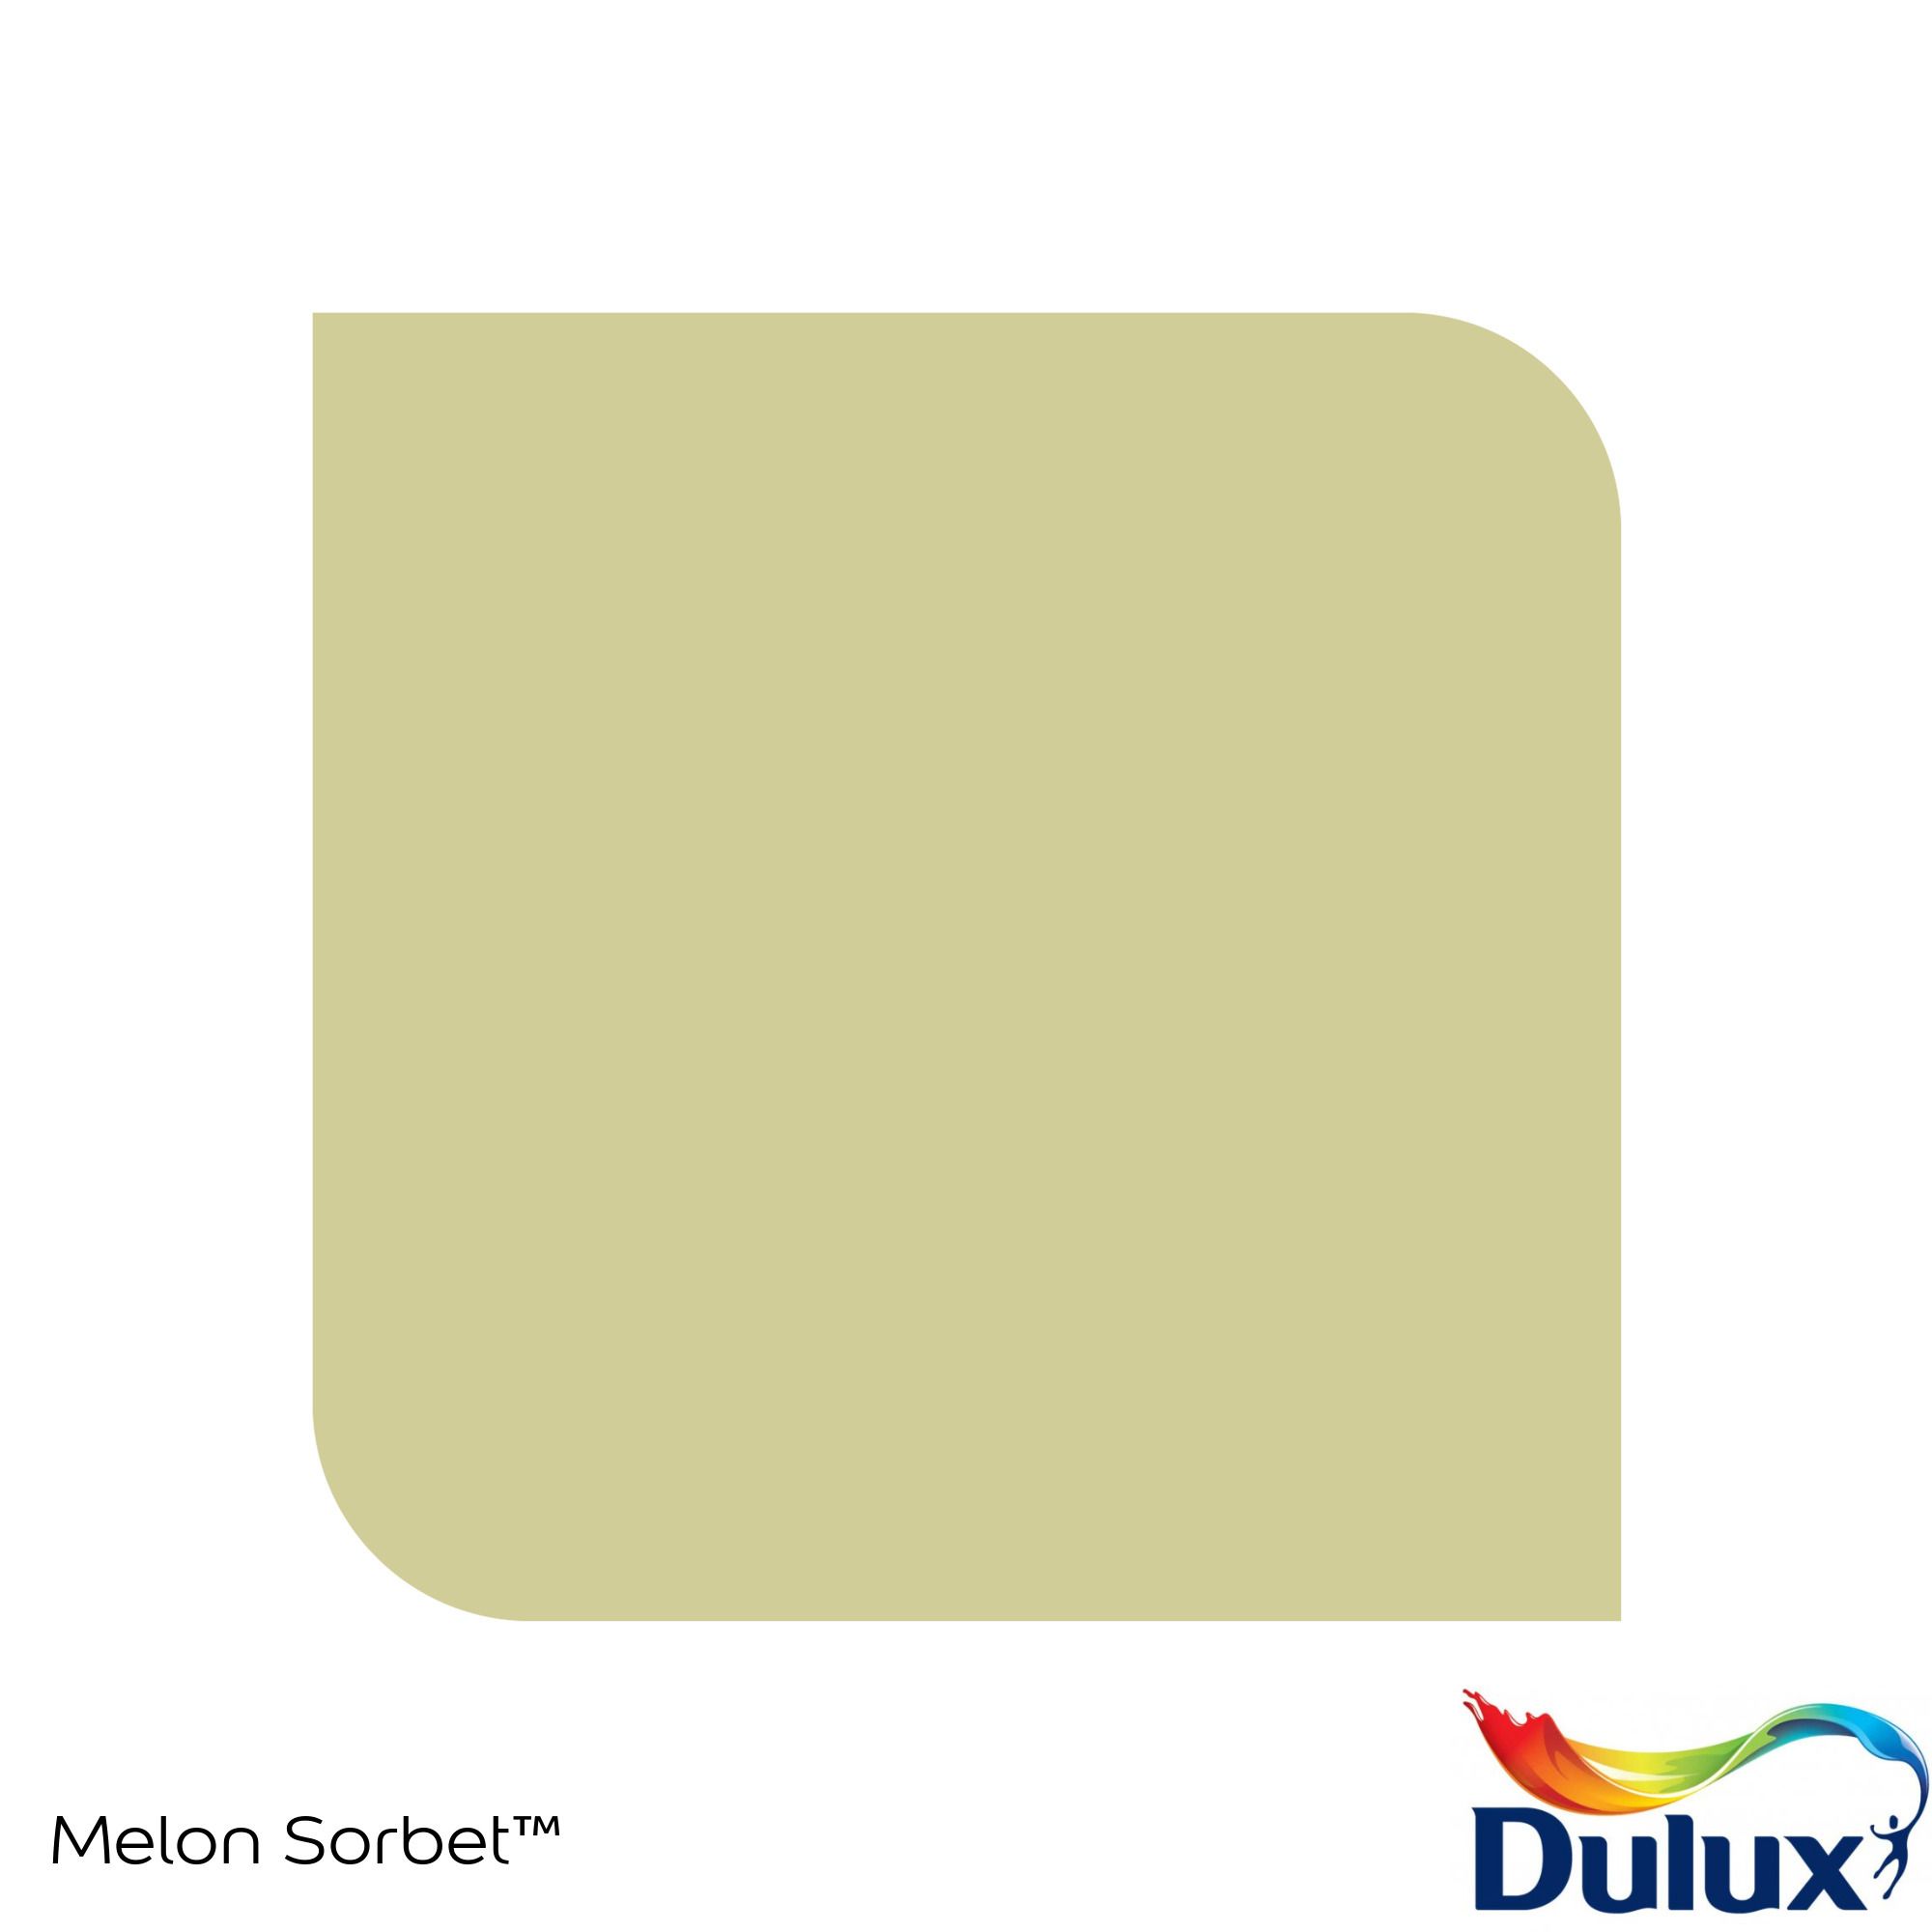 Dulux Standard Melon sorbet Matt Emulsion paint, 30ml Tester pot